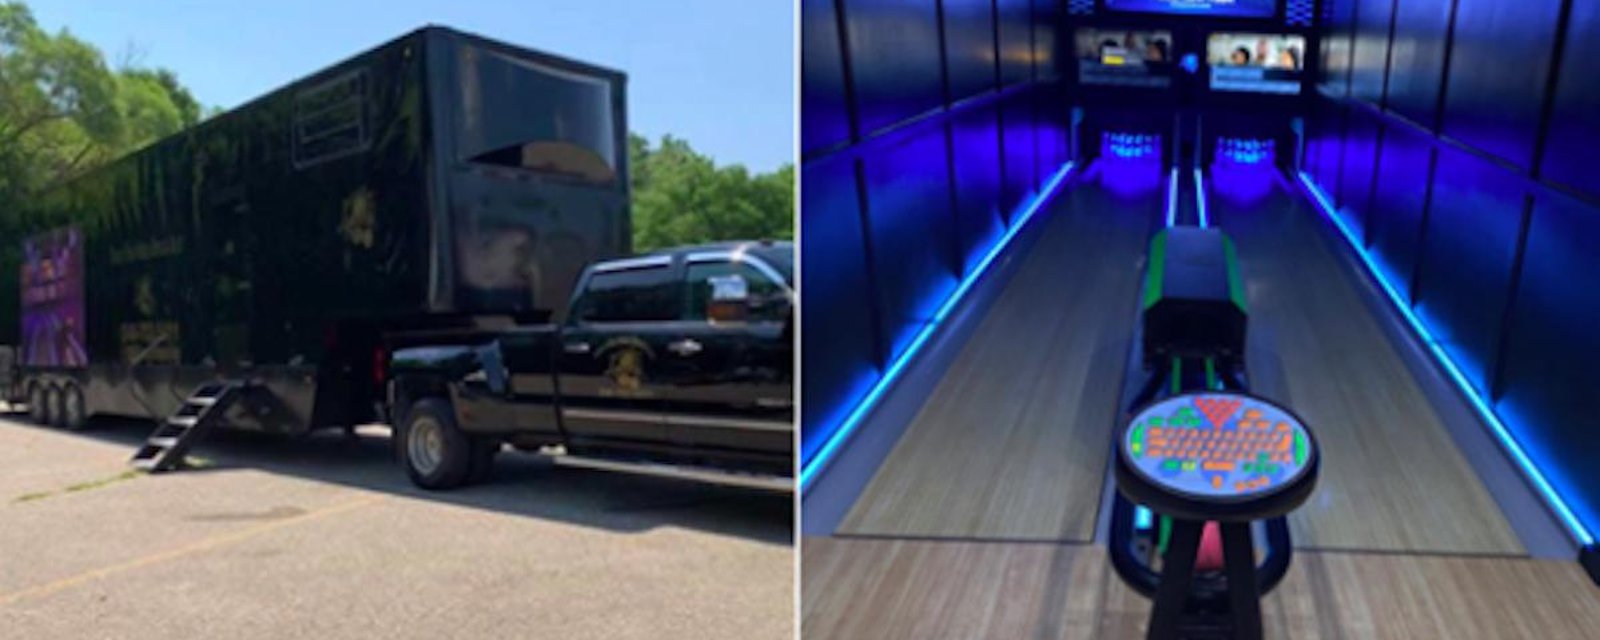 Un homme a transformé une remorque en allée de bowling mobile